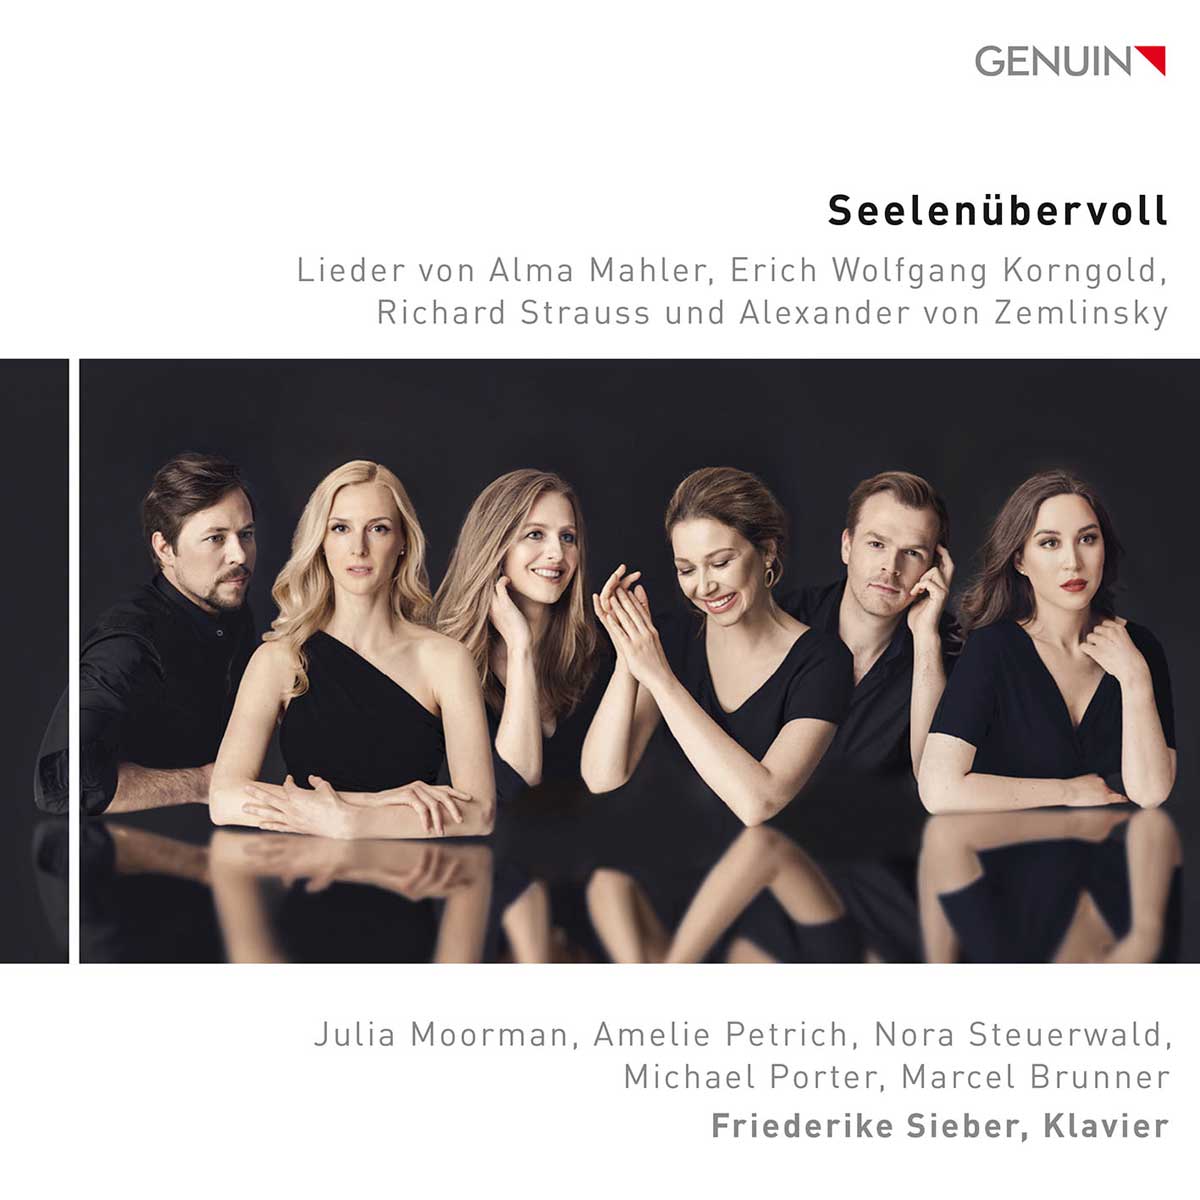 CD album cover 'Seelenübervoll' (GEN 23811) with Friederike Sieber, Julia Moorman, Amelie Petrich, Nora Steuerwald ...